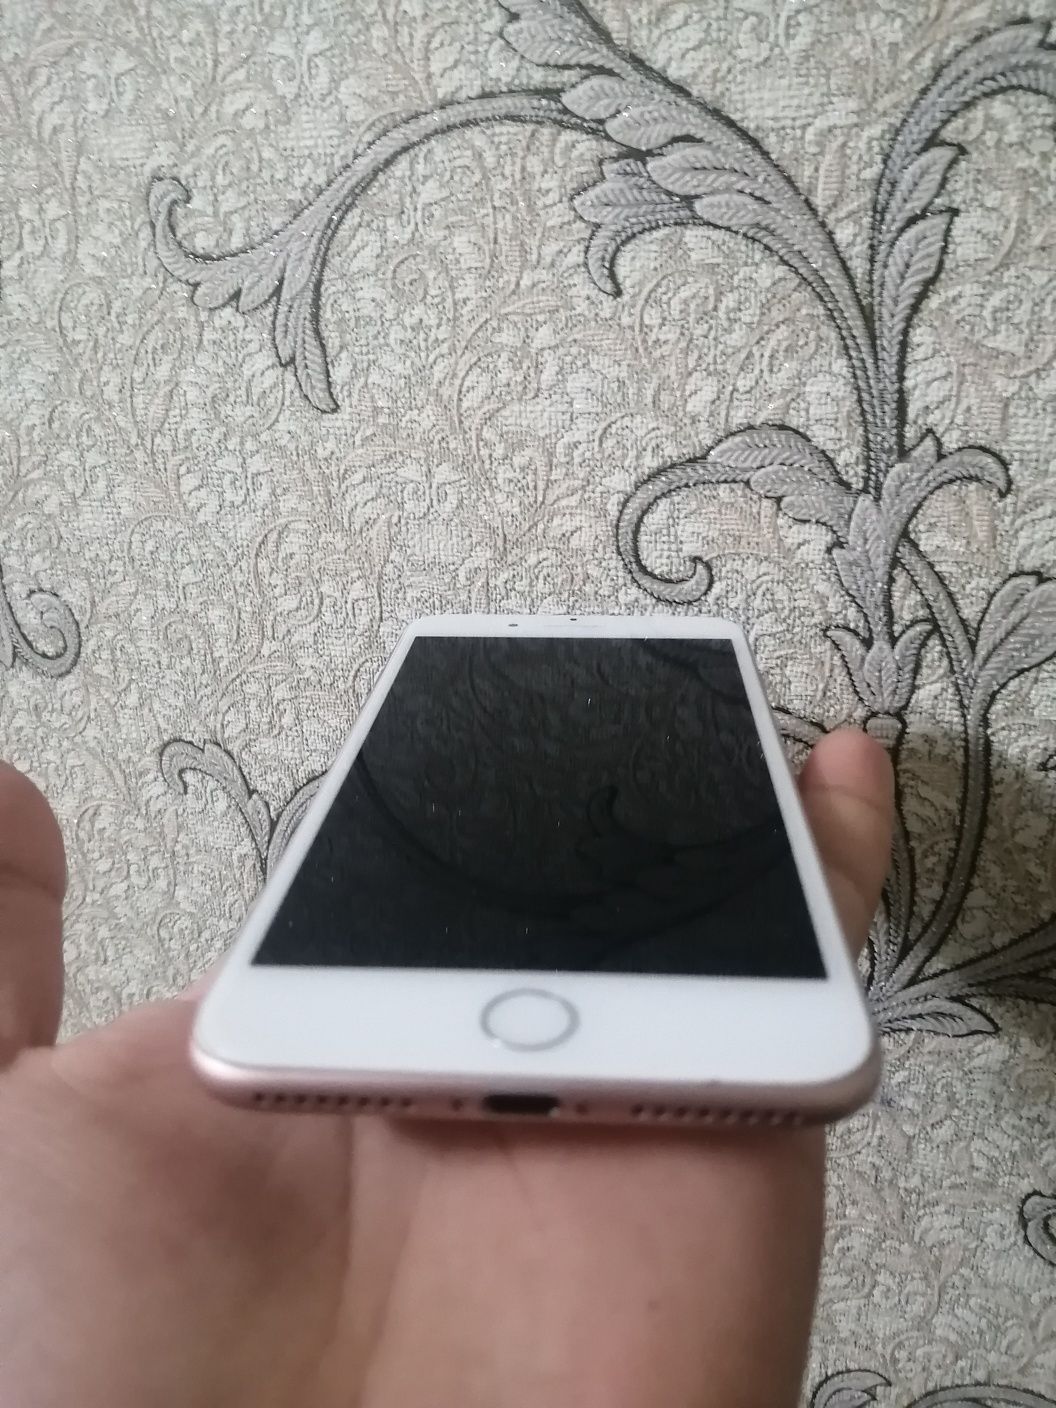 Айфон 8+, в отлисном состоянии, замененых деталей нет